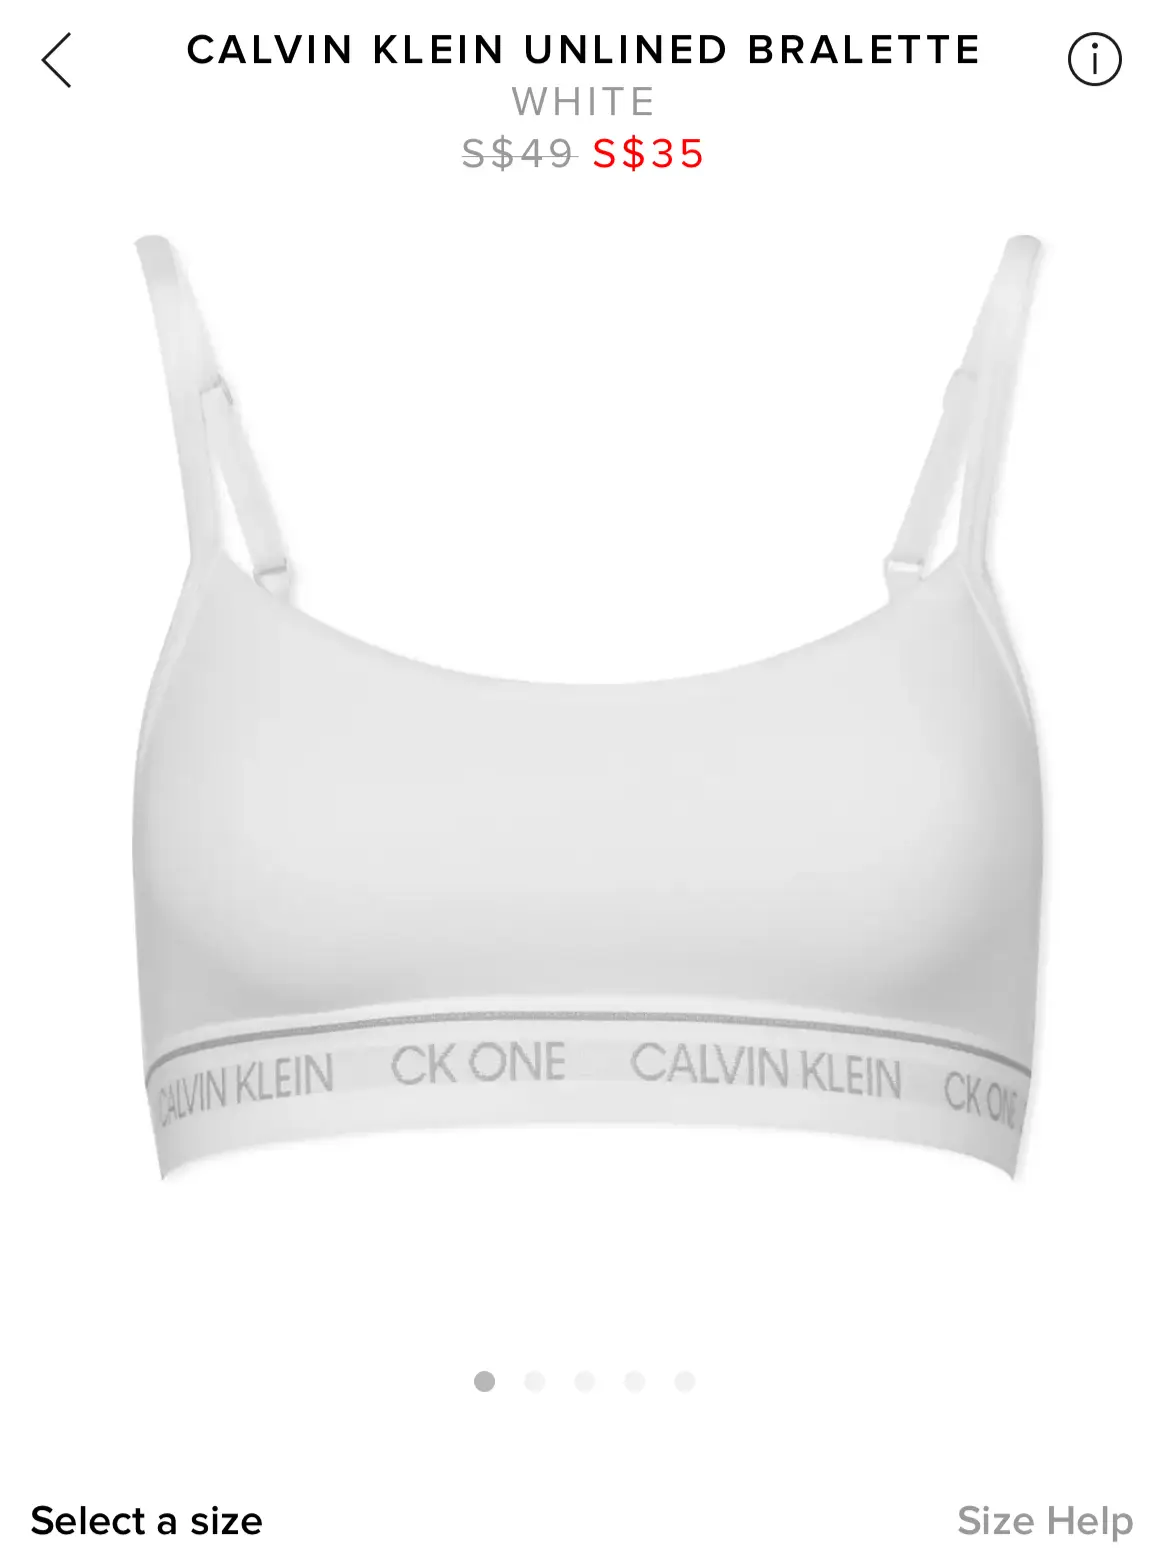 Calvin Klein One bralette ON SALE!!!